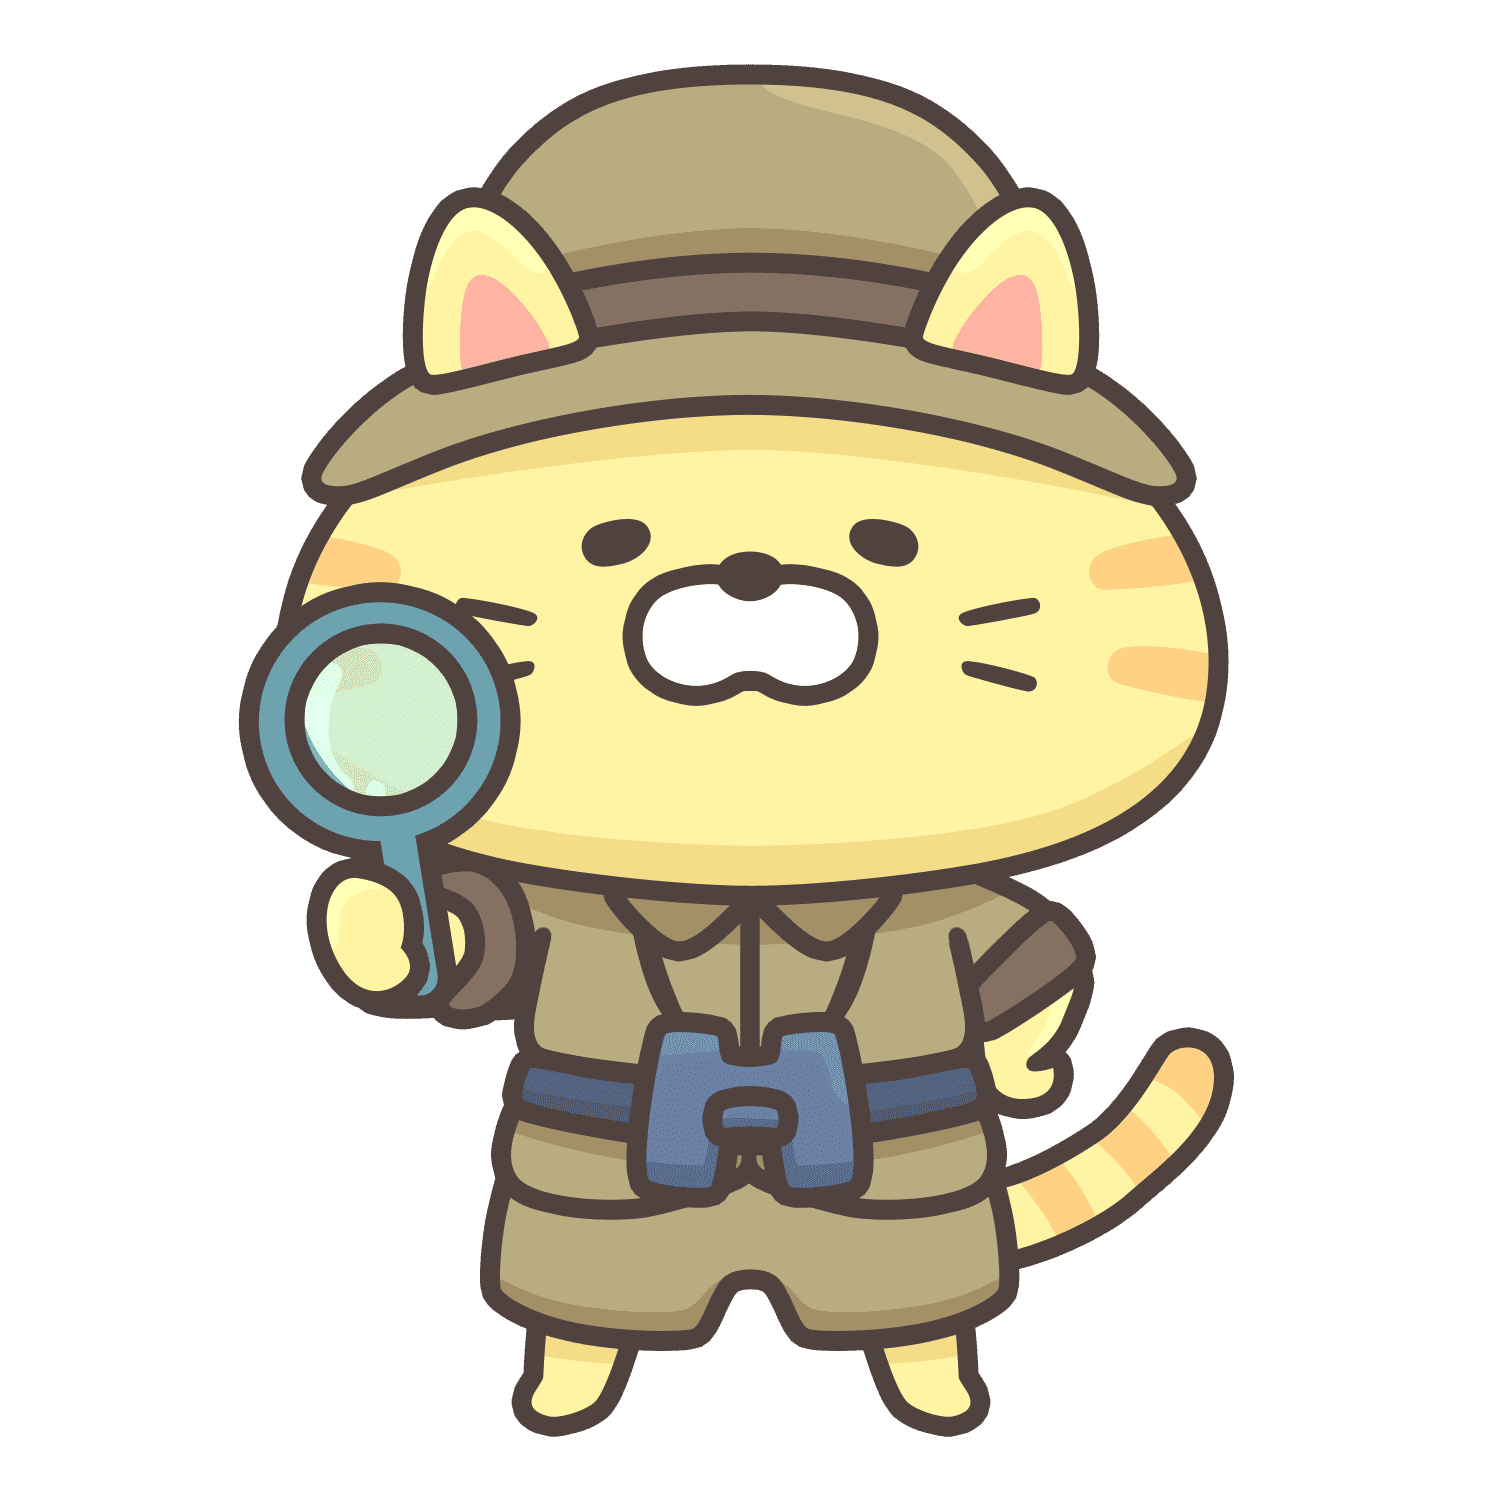 猫のキャラクターのイラスト。猫の色はクリーム色で、冒険家の恰好をしている。帽子をかぶり、右手に虫眼鏡を持ち、首には双眼鏡をぶら下げている。